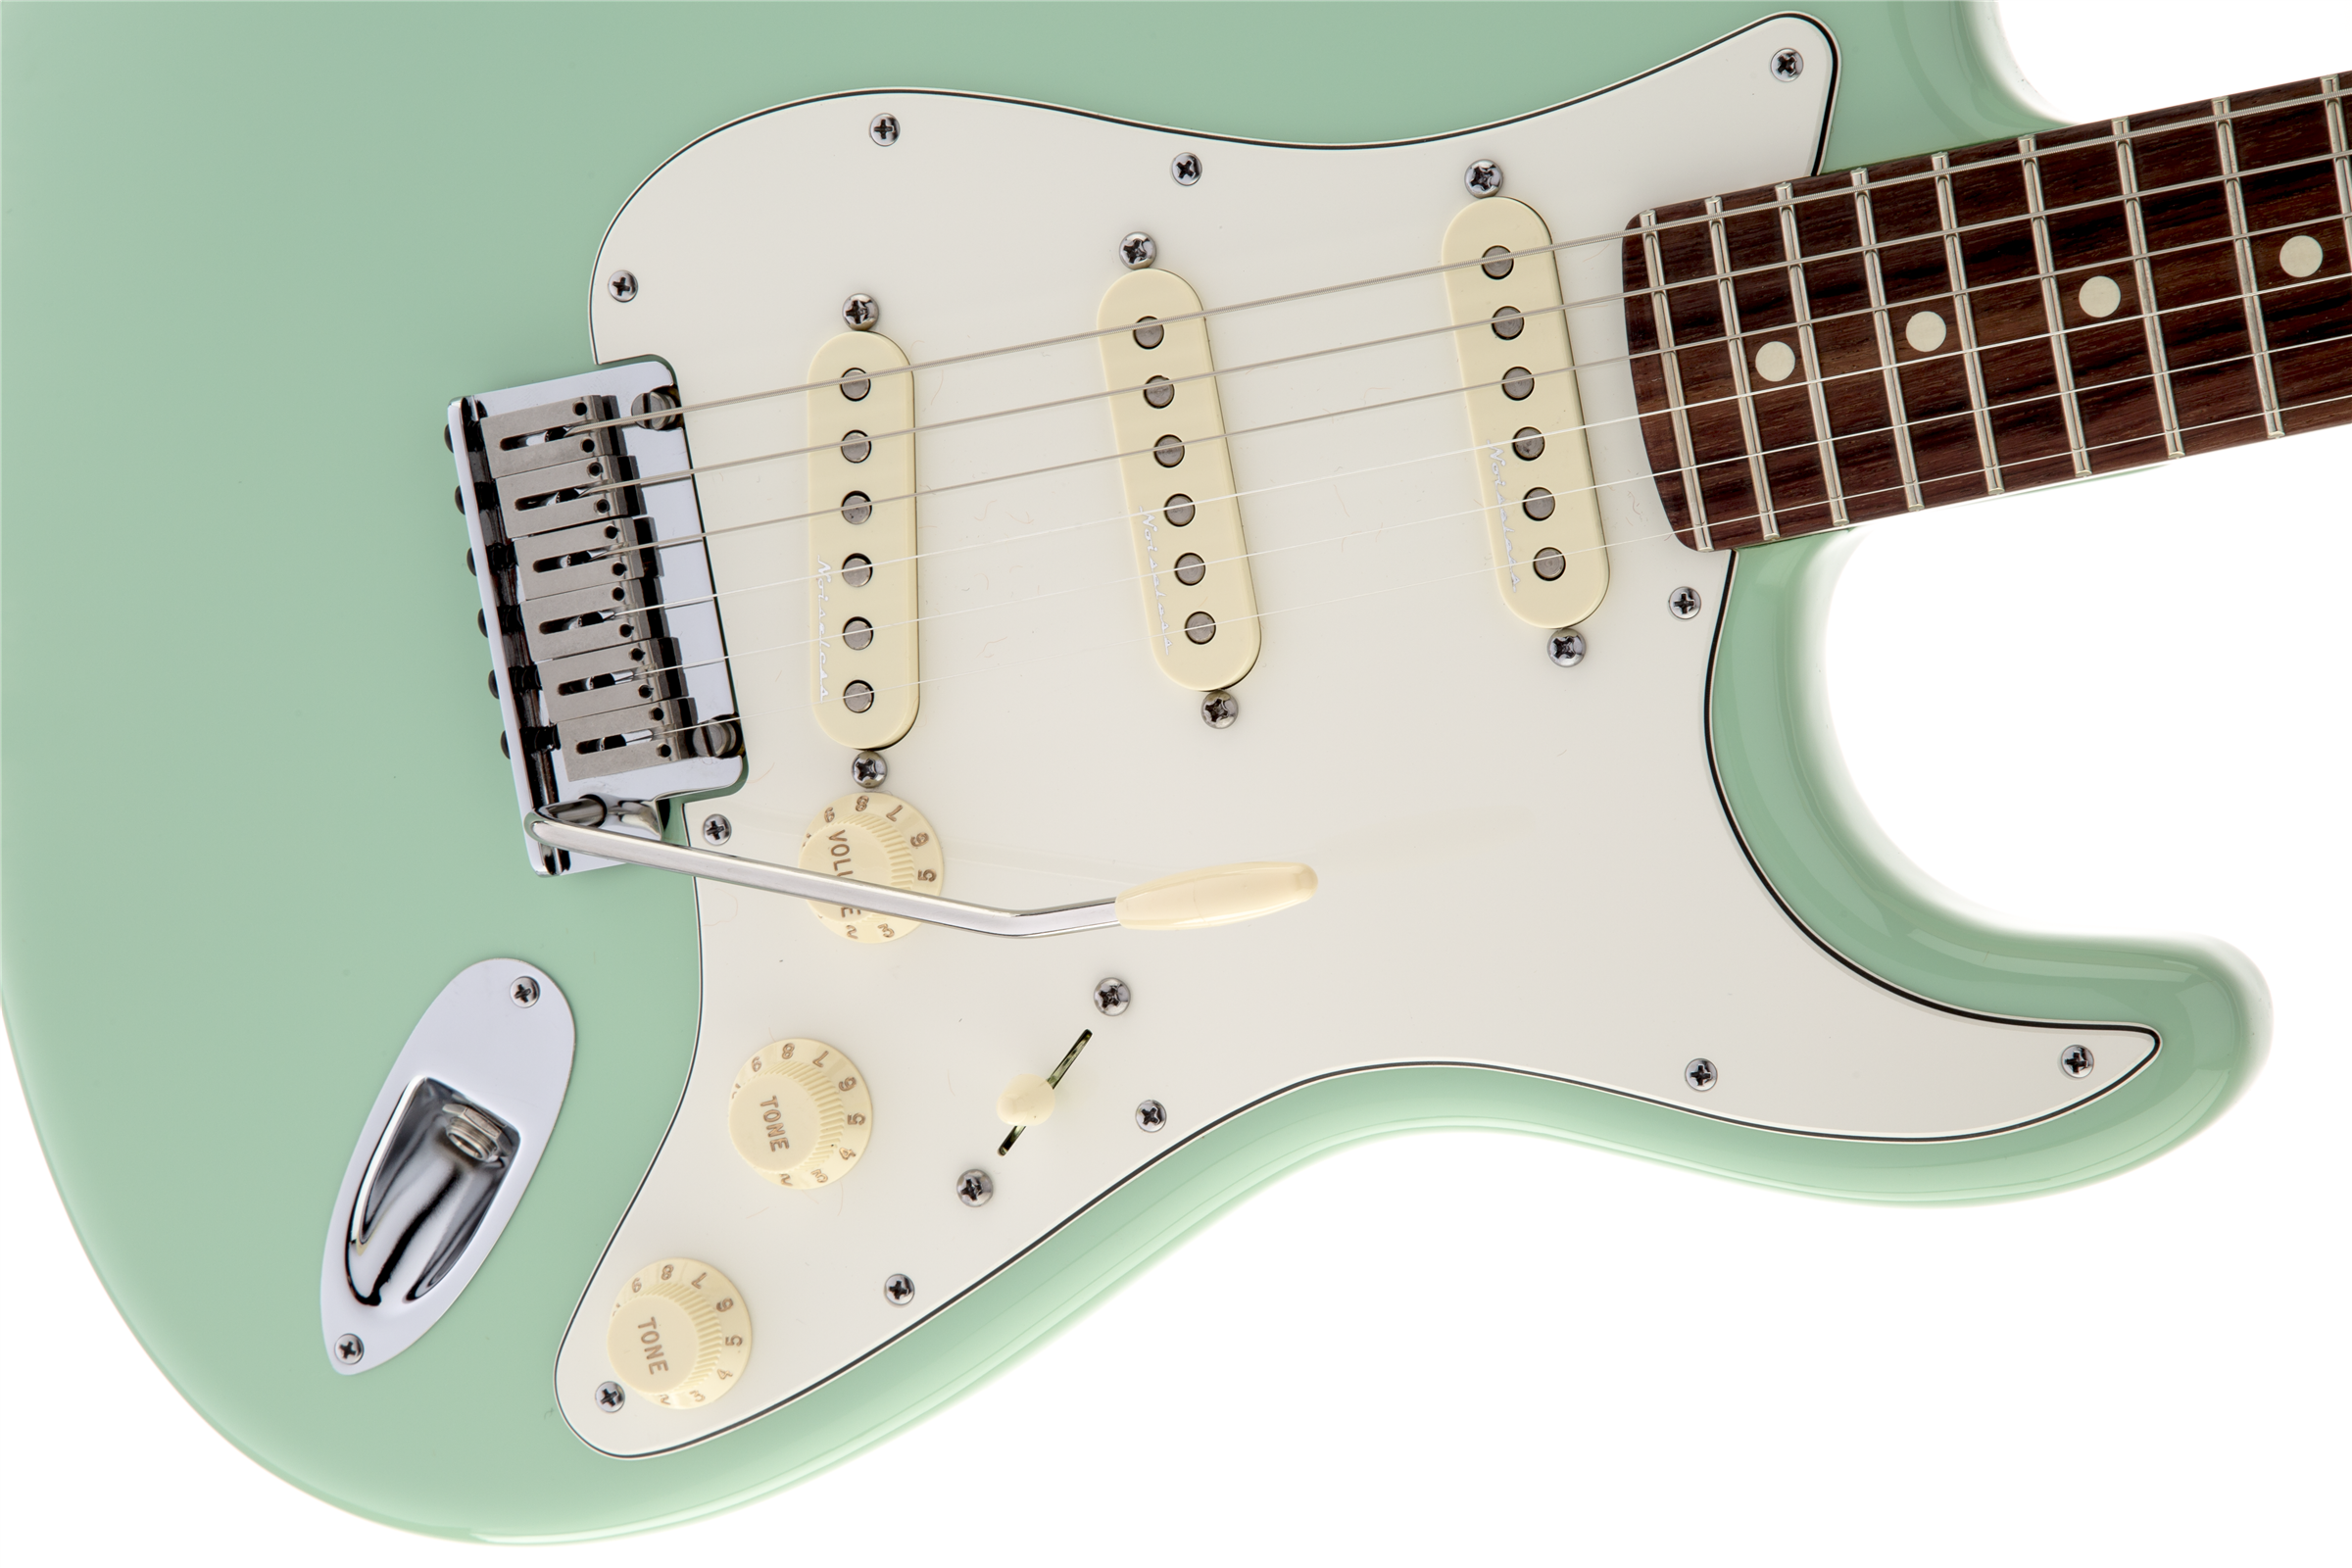 Fender Stratocaster Jeff Beck - Surf Green - Str shape electric guitar - Variation 2